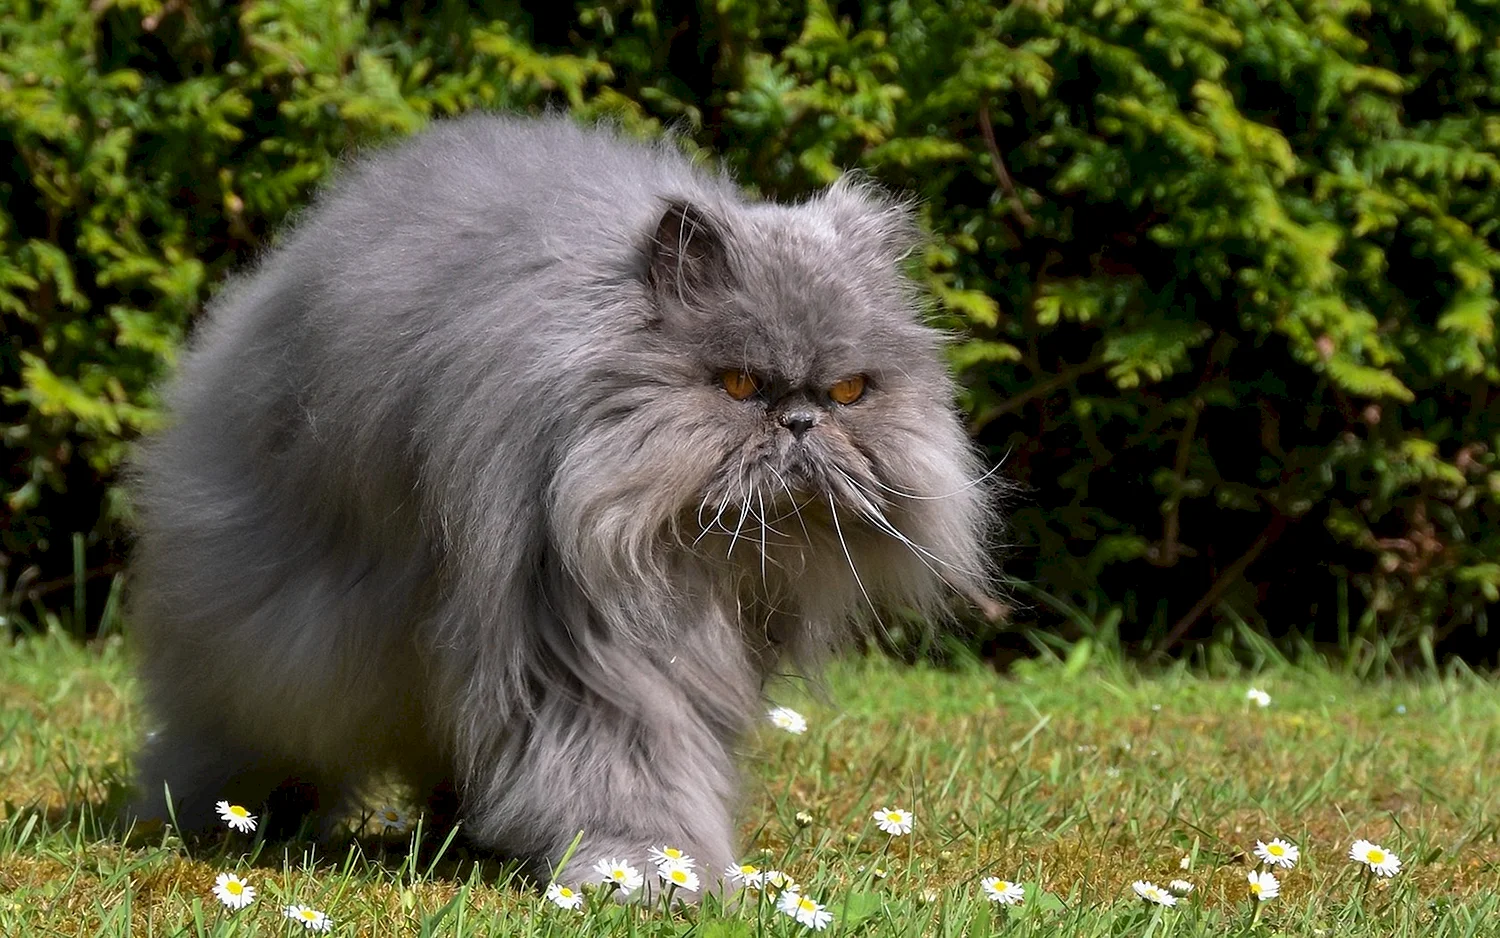 Персидская длинношерстная кошка Джуно